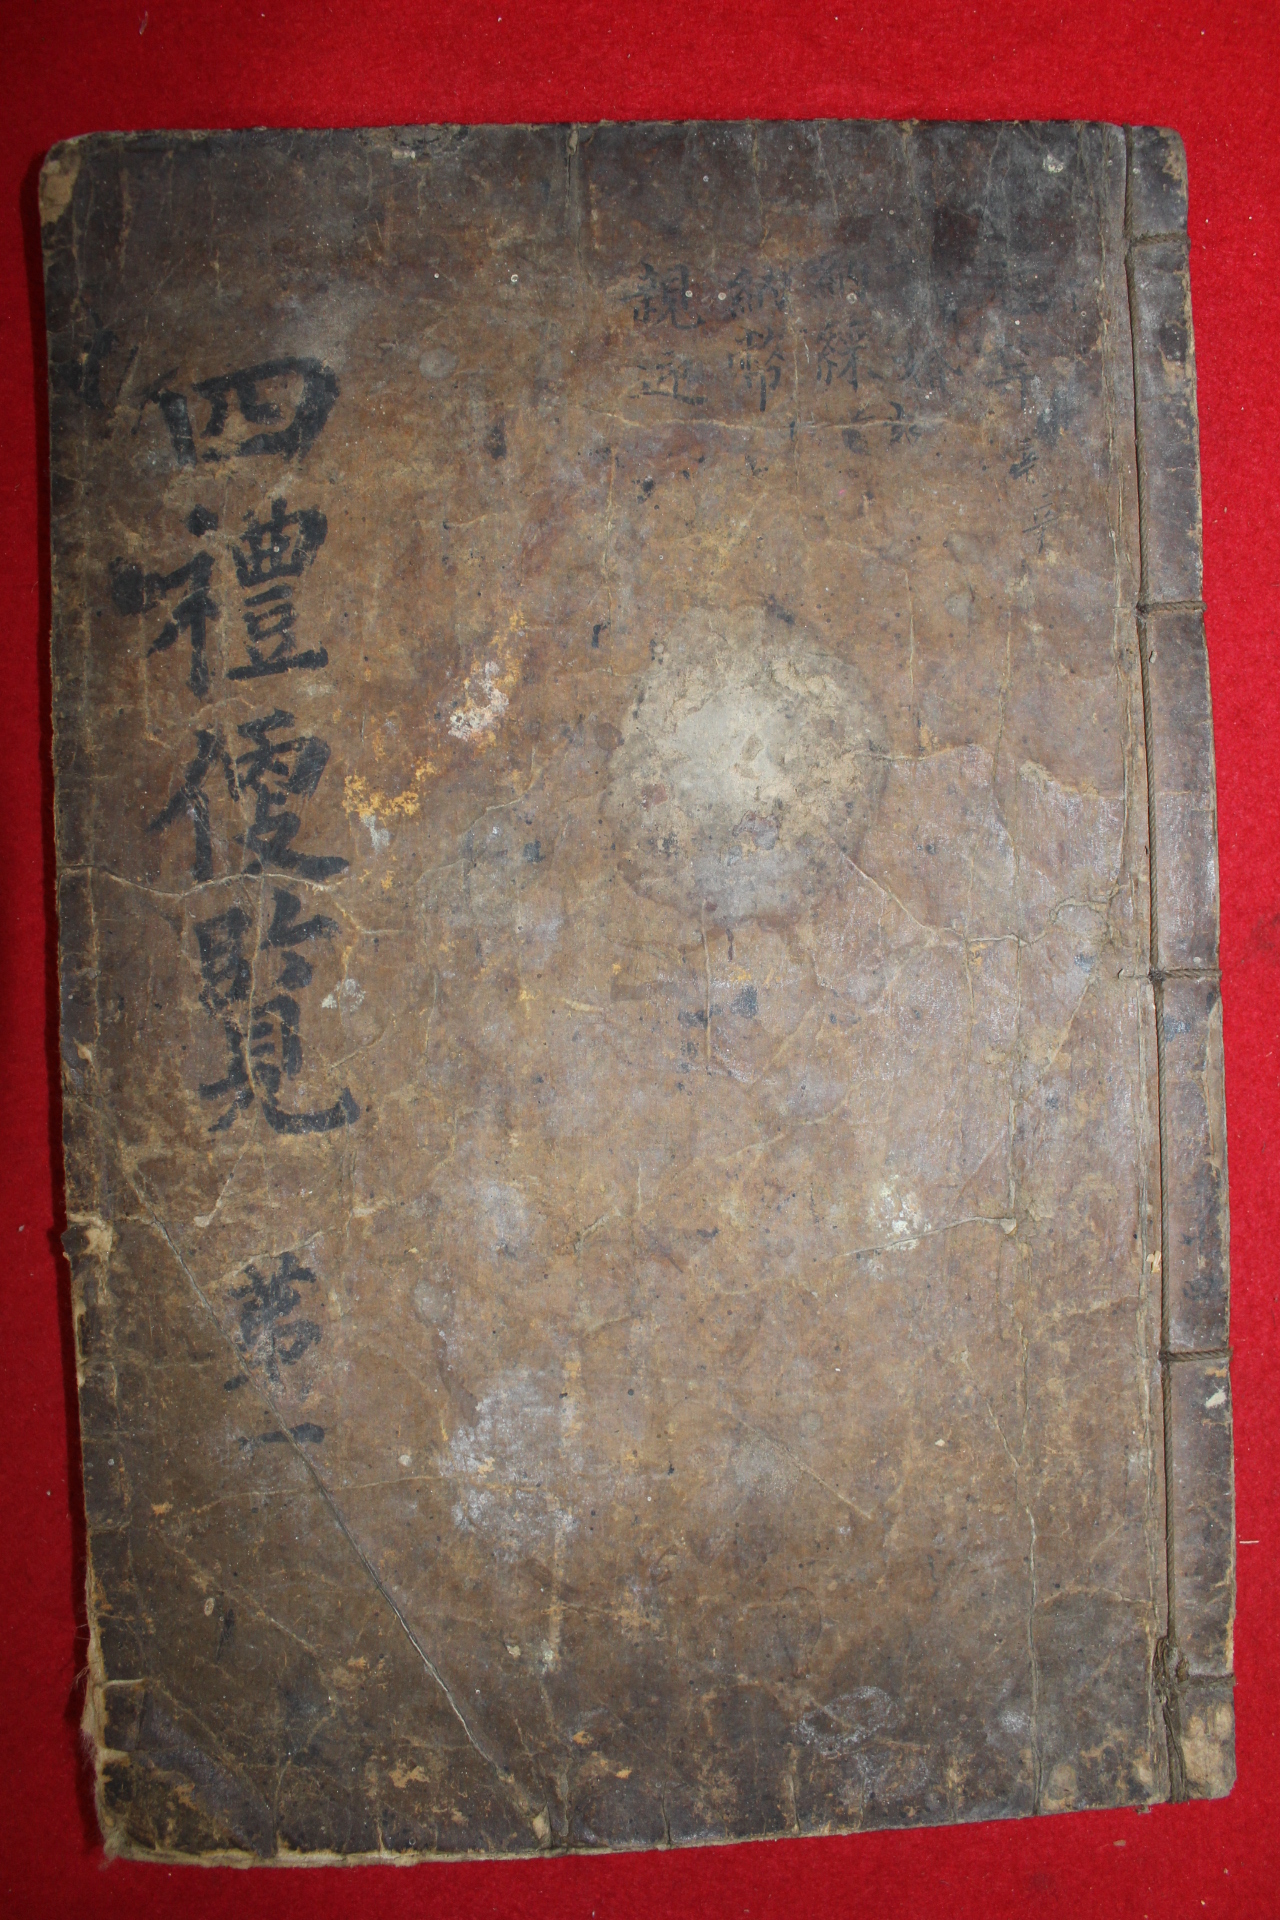 조선시대 고목판본 사례편람(四禮便覽)권1,2  1책